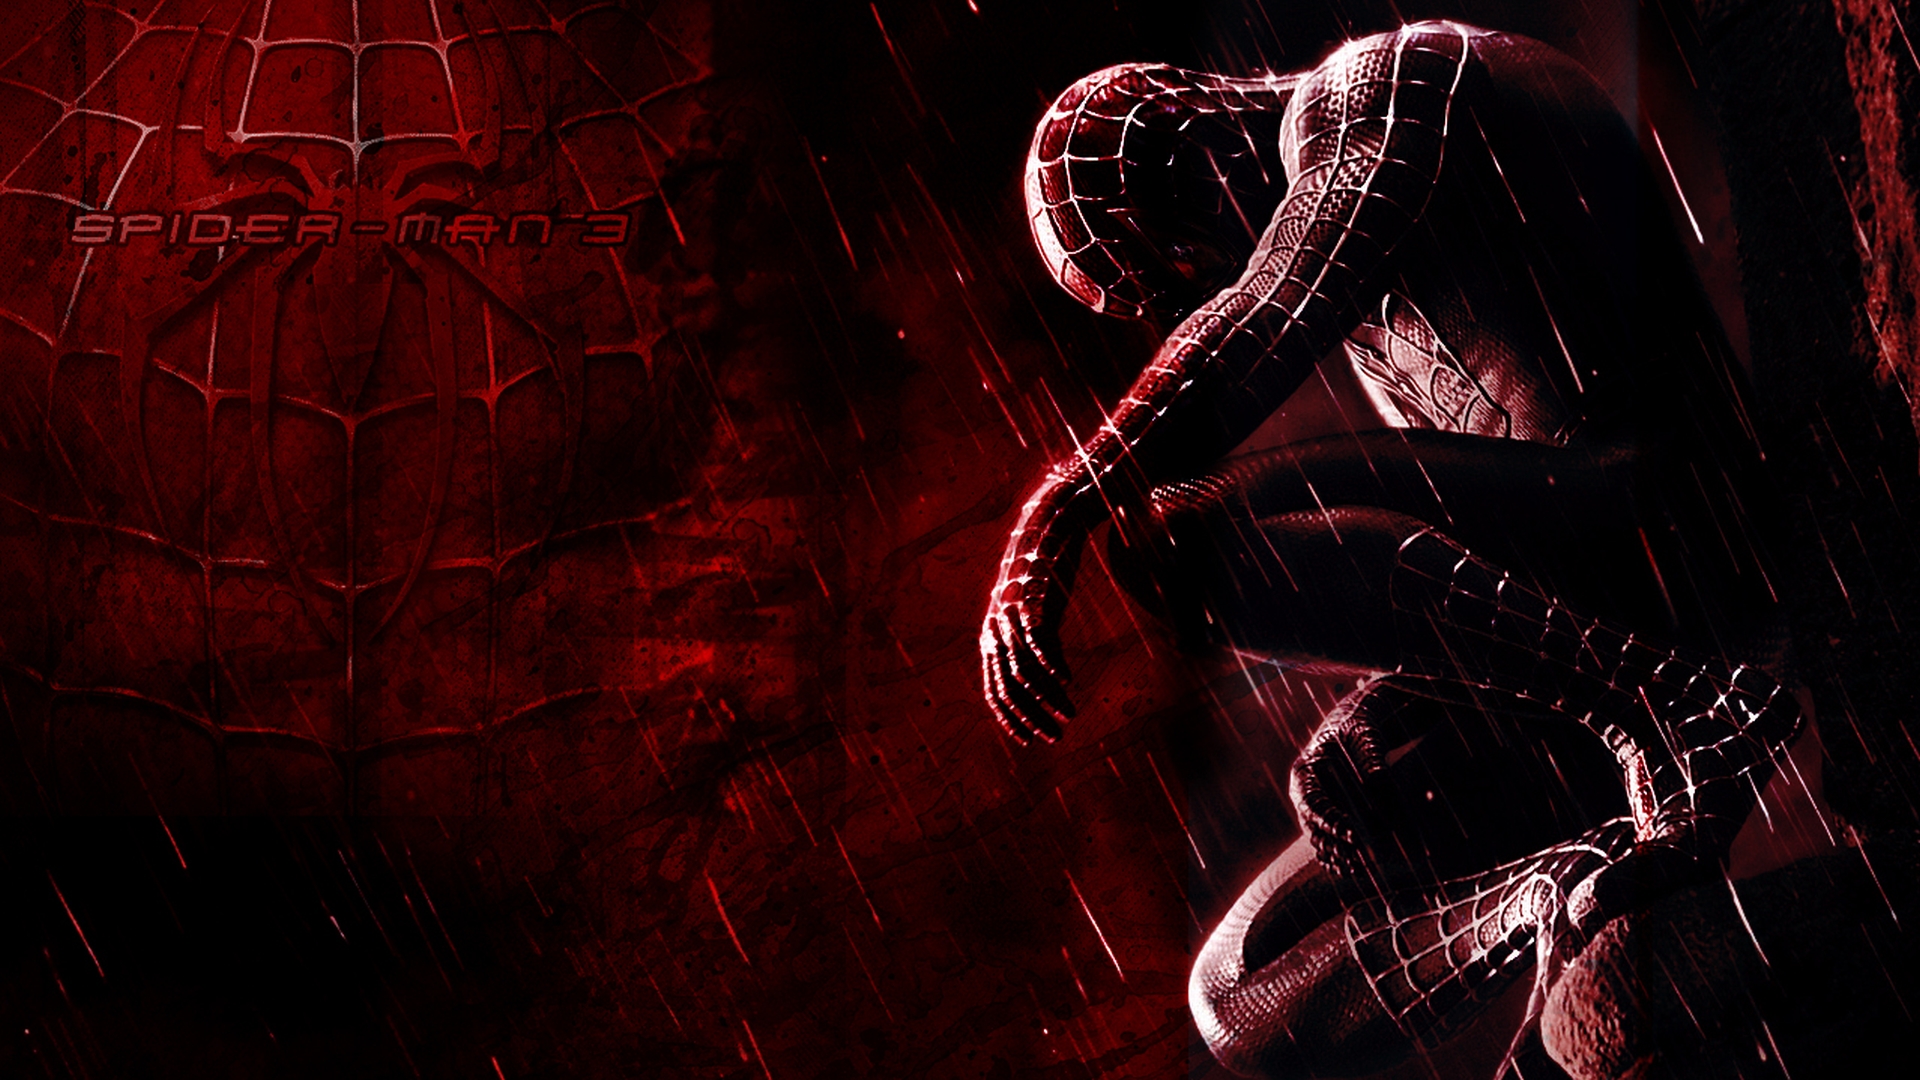 Full HD movie, spider man 3, spider man